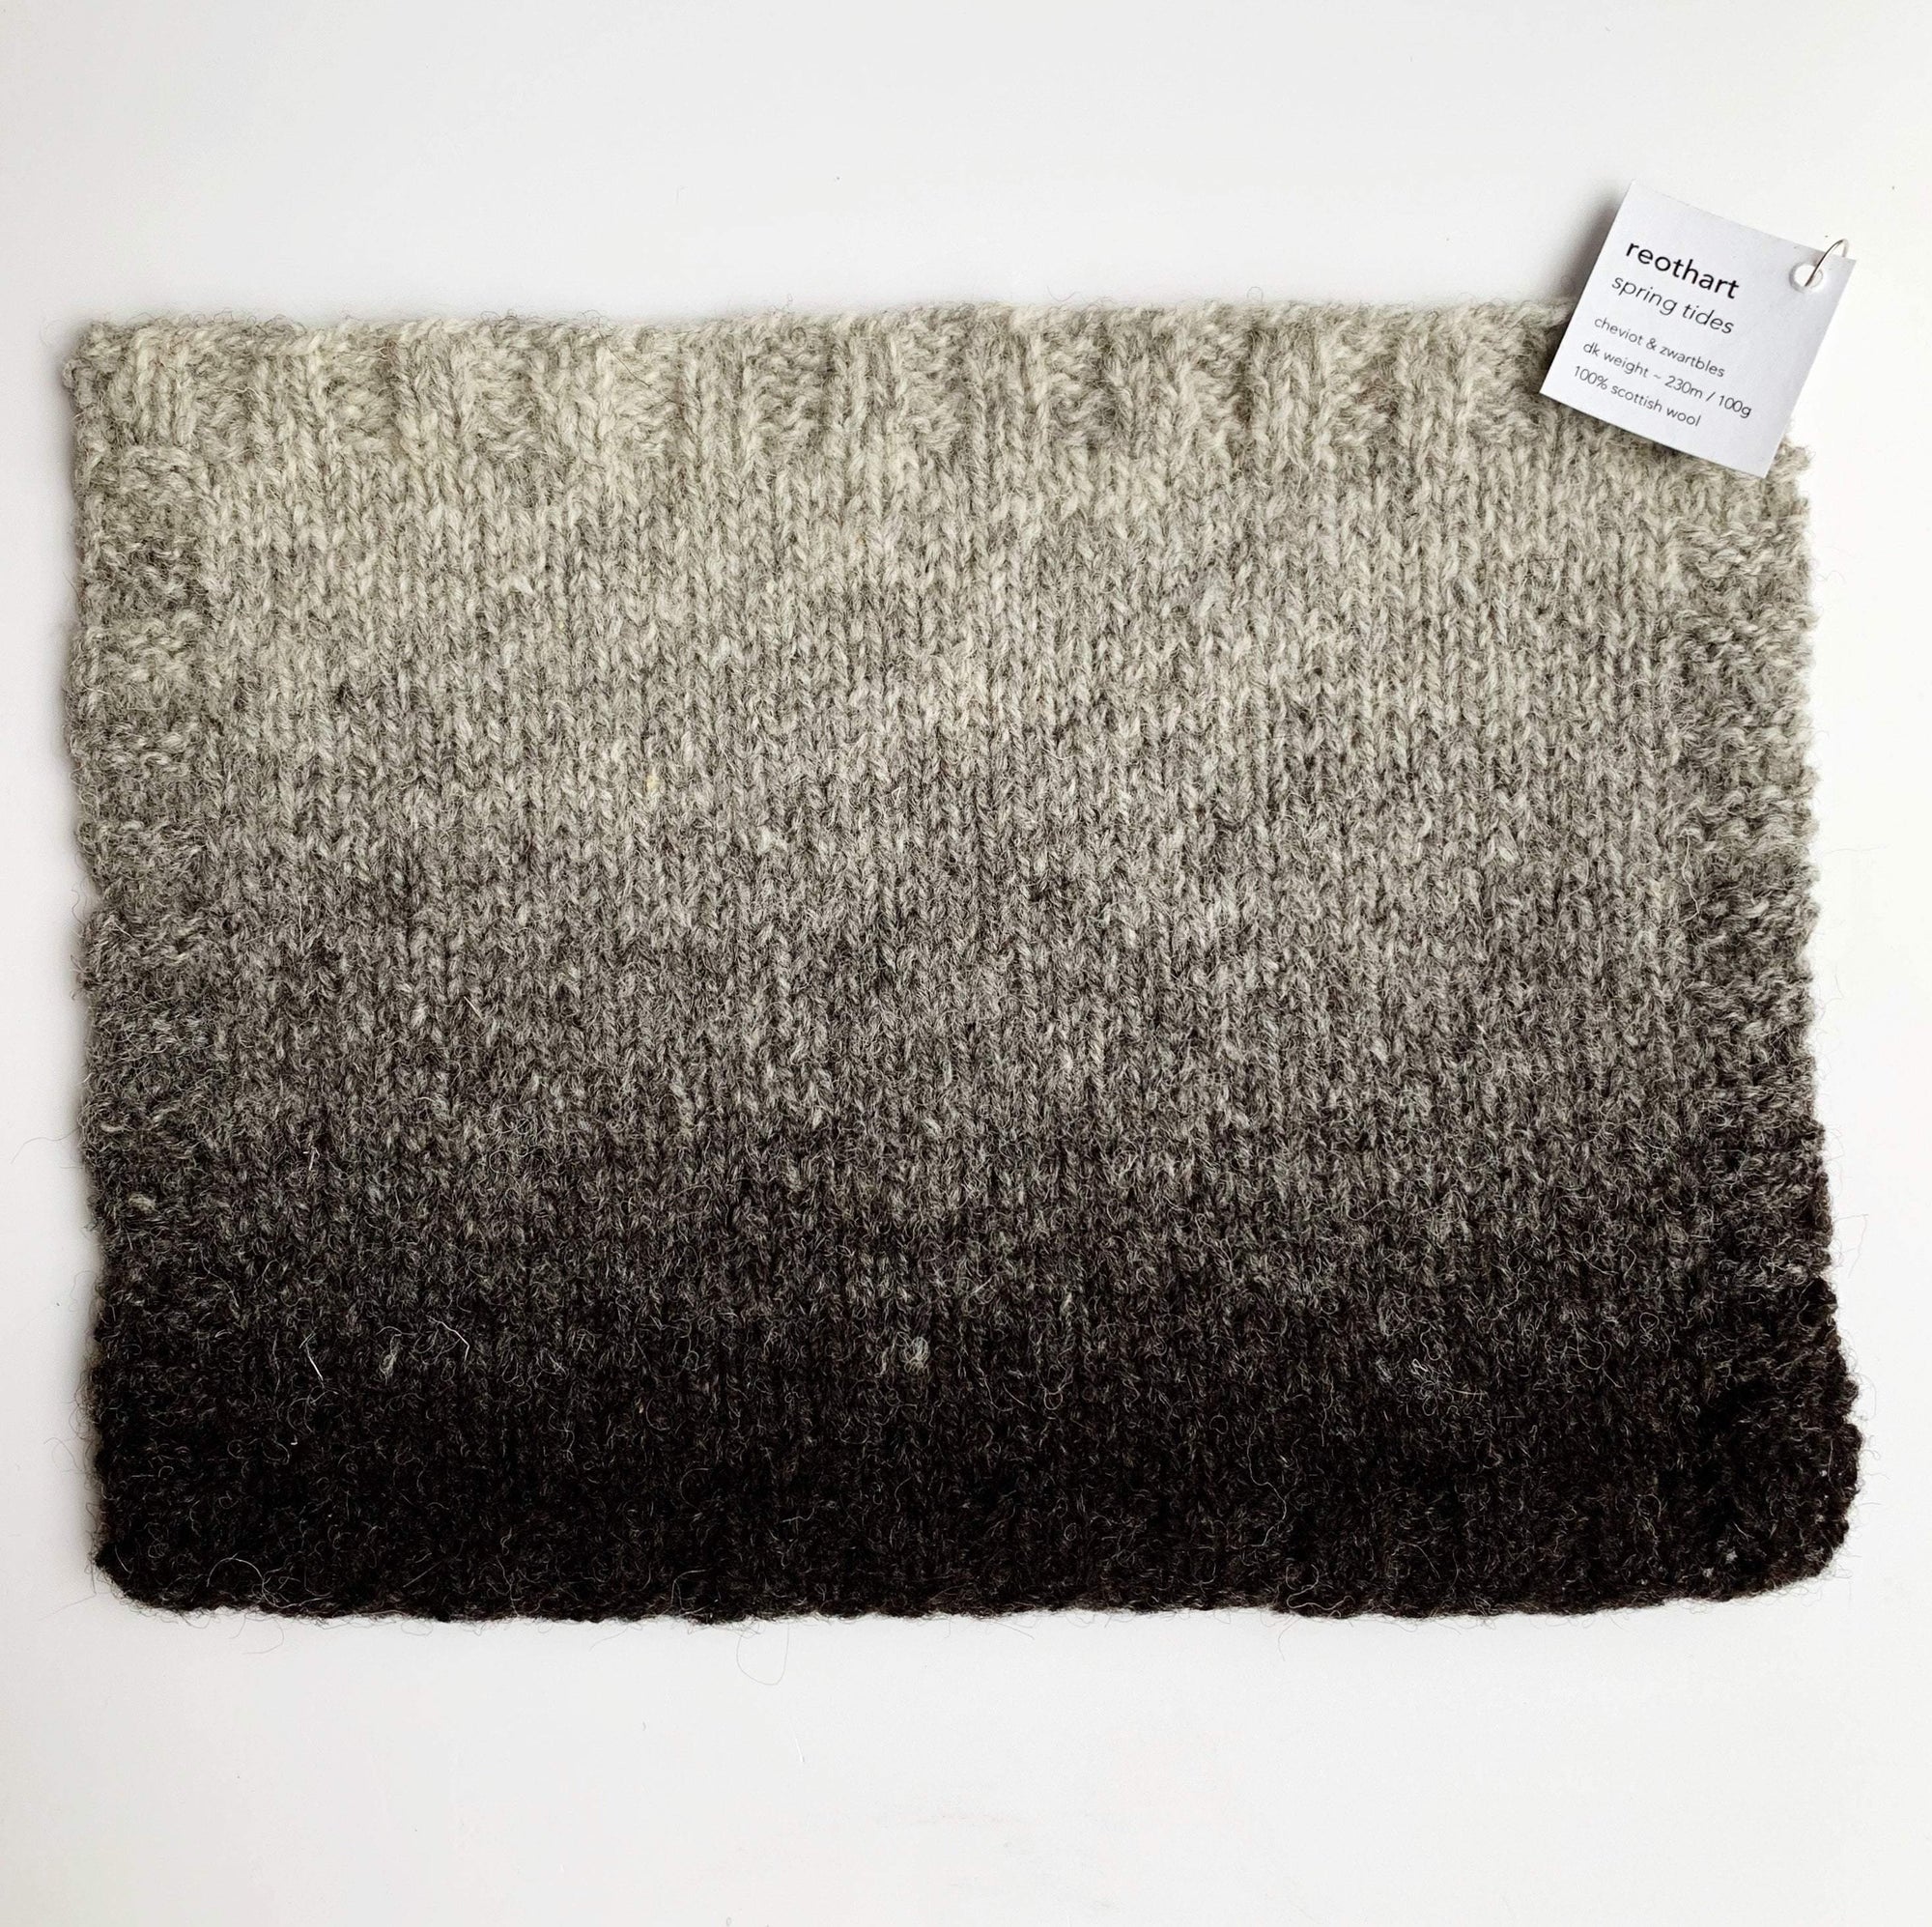 Reothart DK Uist Wool